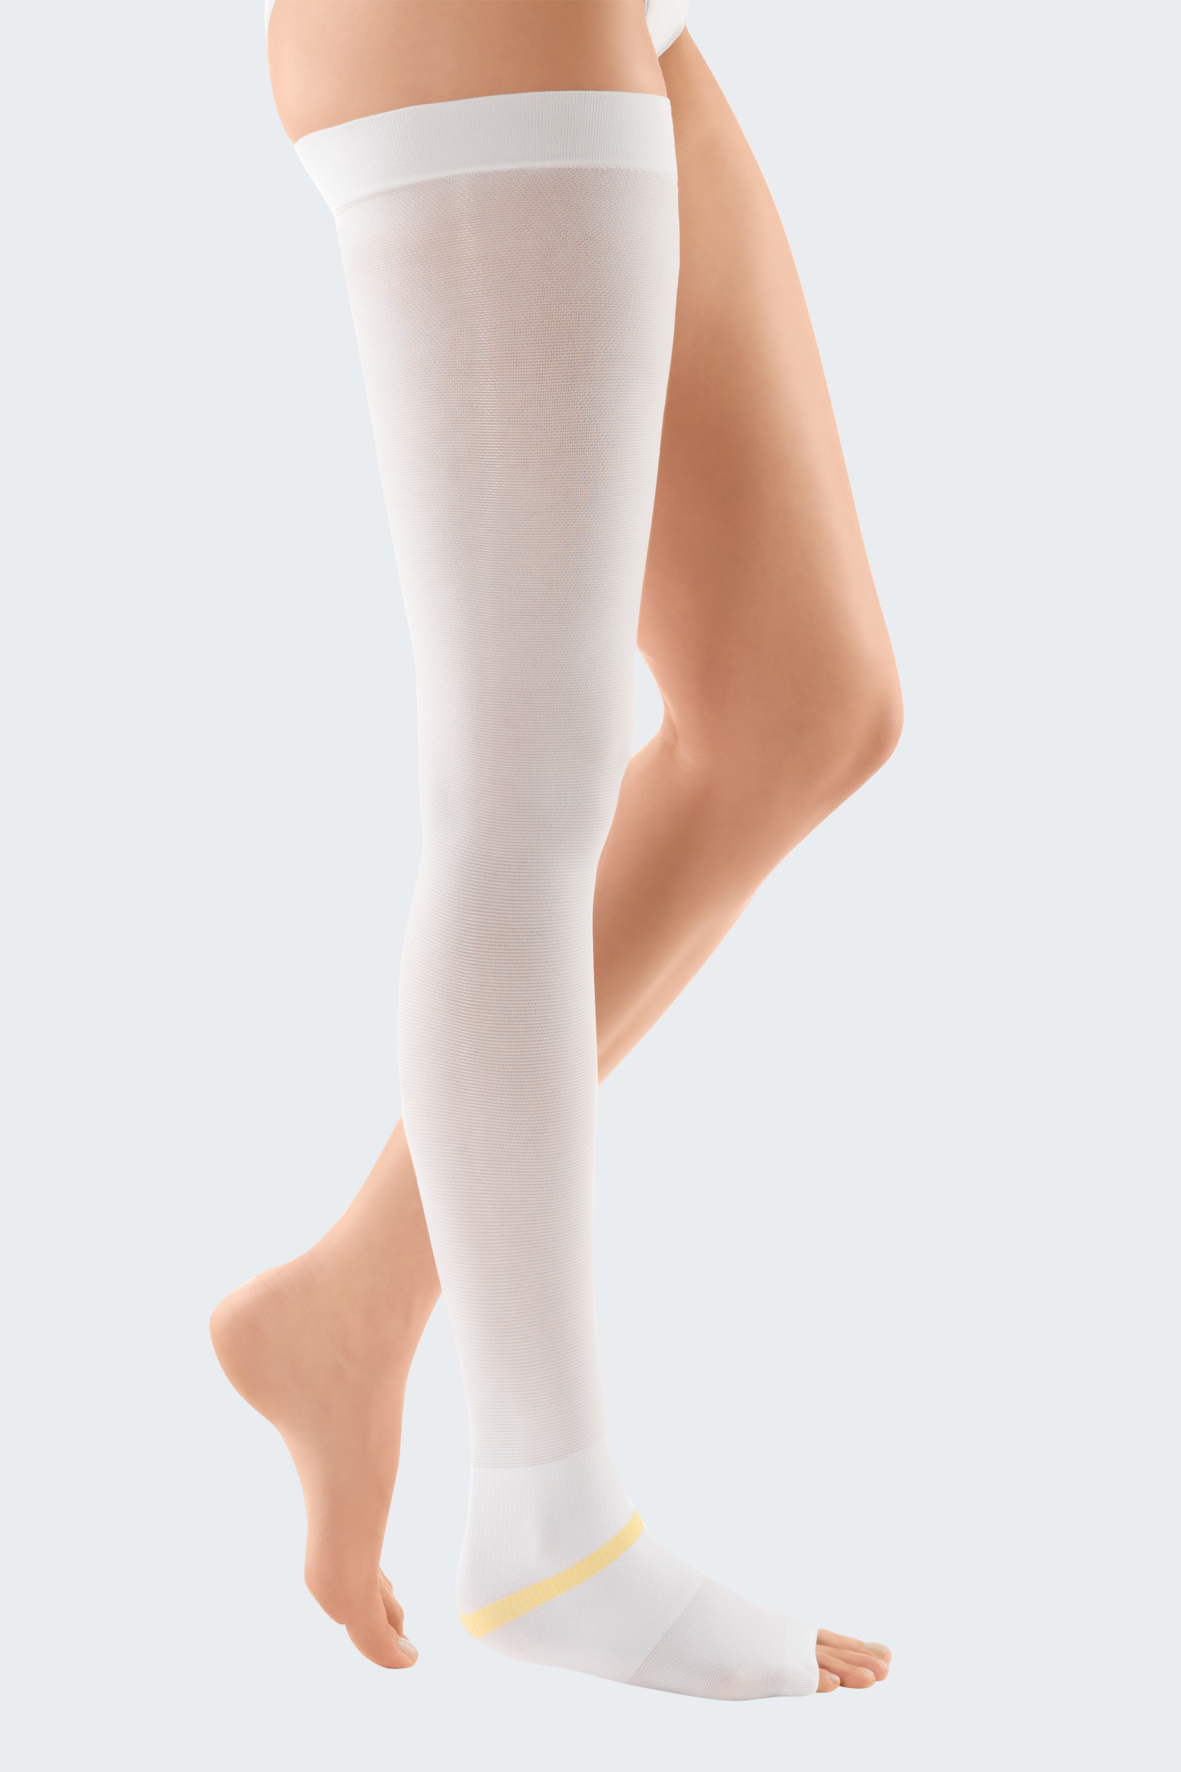 circaid® juxtafit® essentials leg